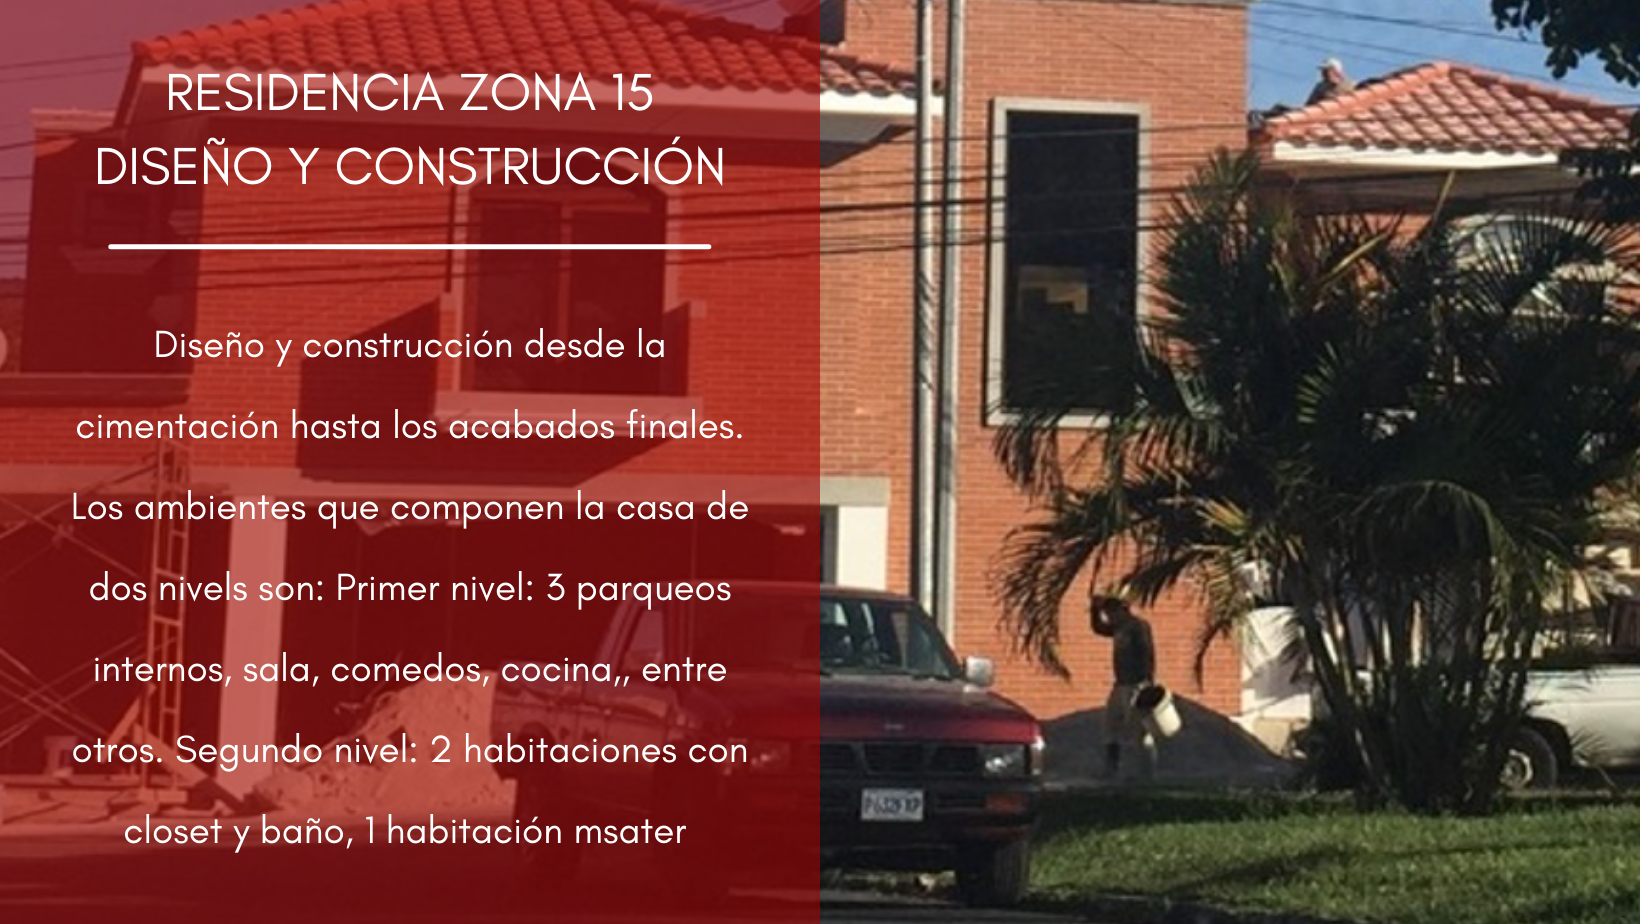 RESIDENCIA ZONA 15 DISEÑO Y CONSTRUCCIÓN